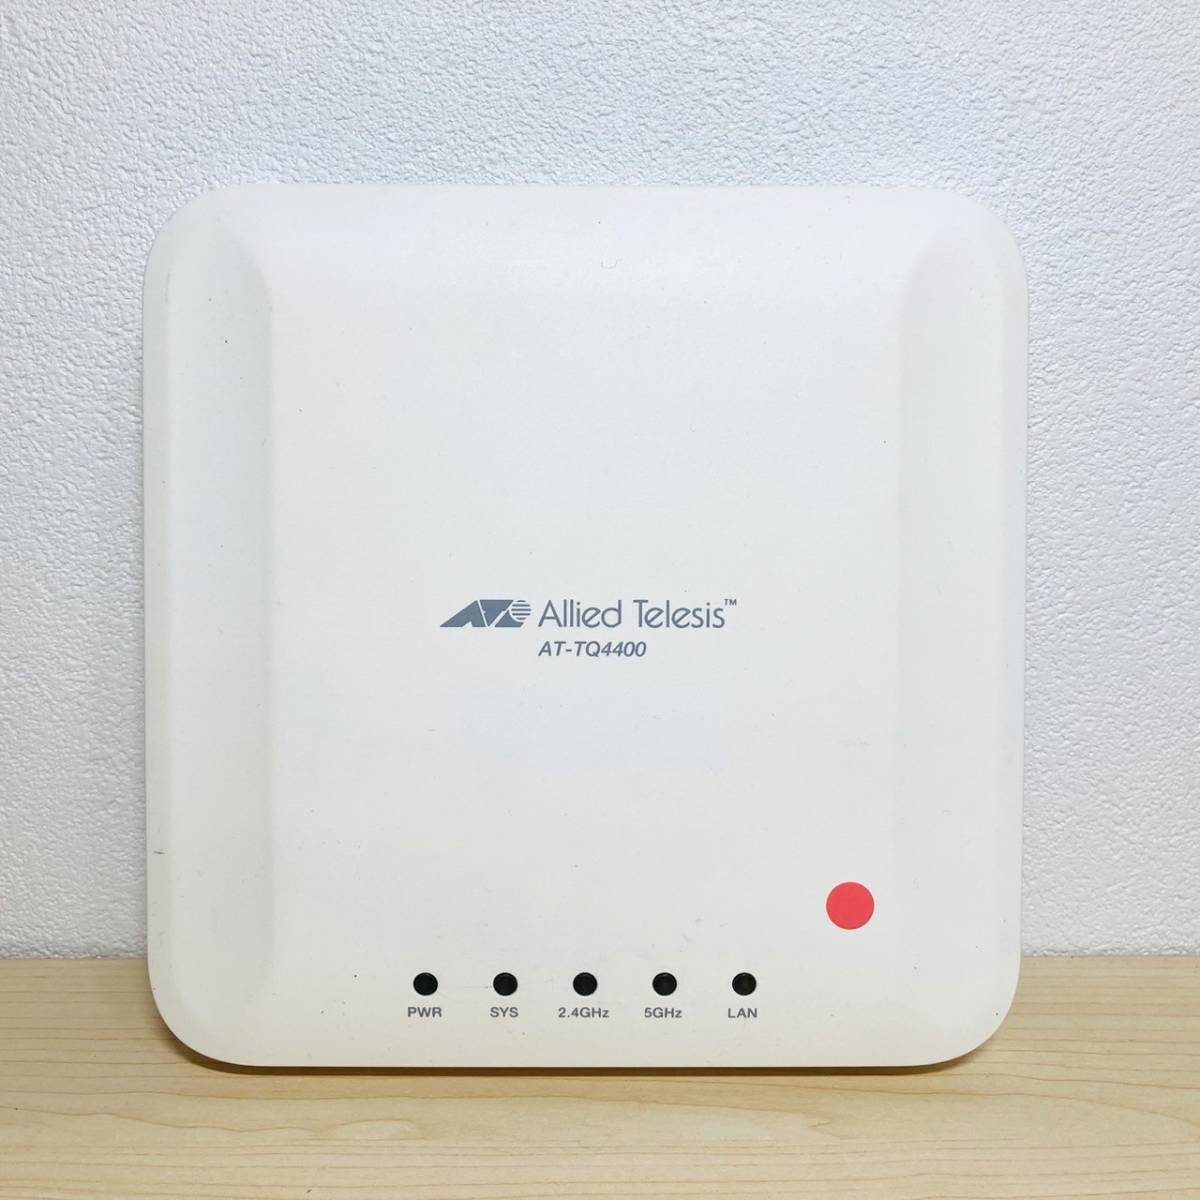 138【通電OK】 Allied Telesis AT-TQ4400 無線 LAN アクセスポイント AP ホワイト 白 Wi-Fi インターネット ルーター アライドテレシス_画像1